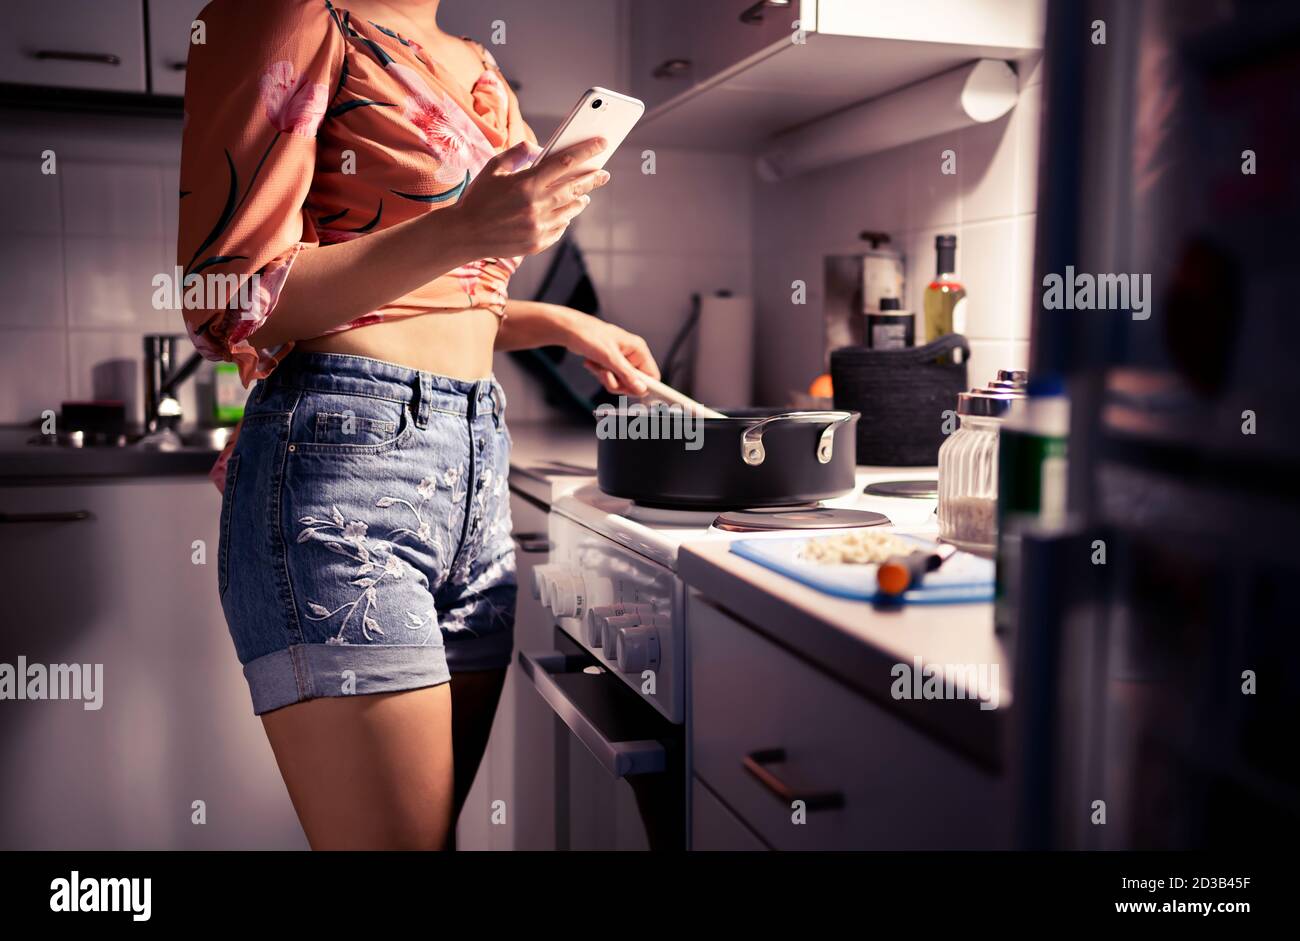 Mujer joven cocinando y usando el teléfono. Persona preparando una cena y enviando mensajes de texto con un smartphone. Dieta o estilo de vida saludable. Cocina casera por la noche. Foto de stock